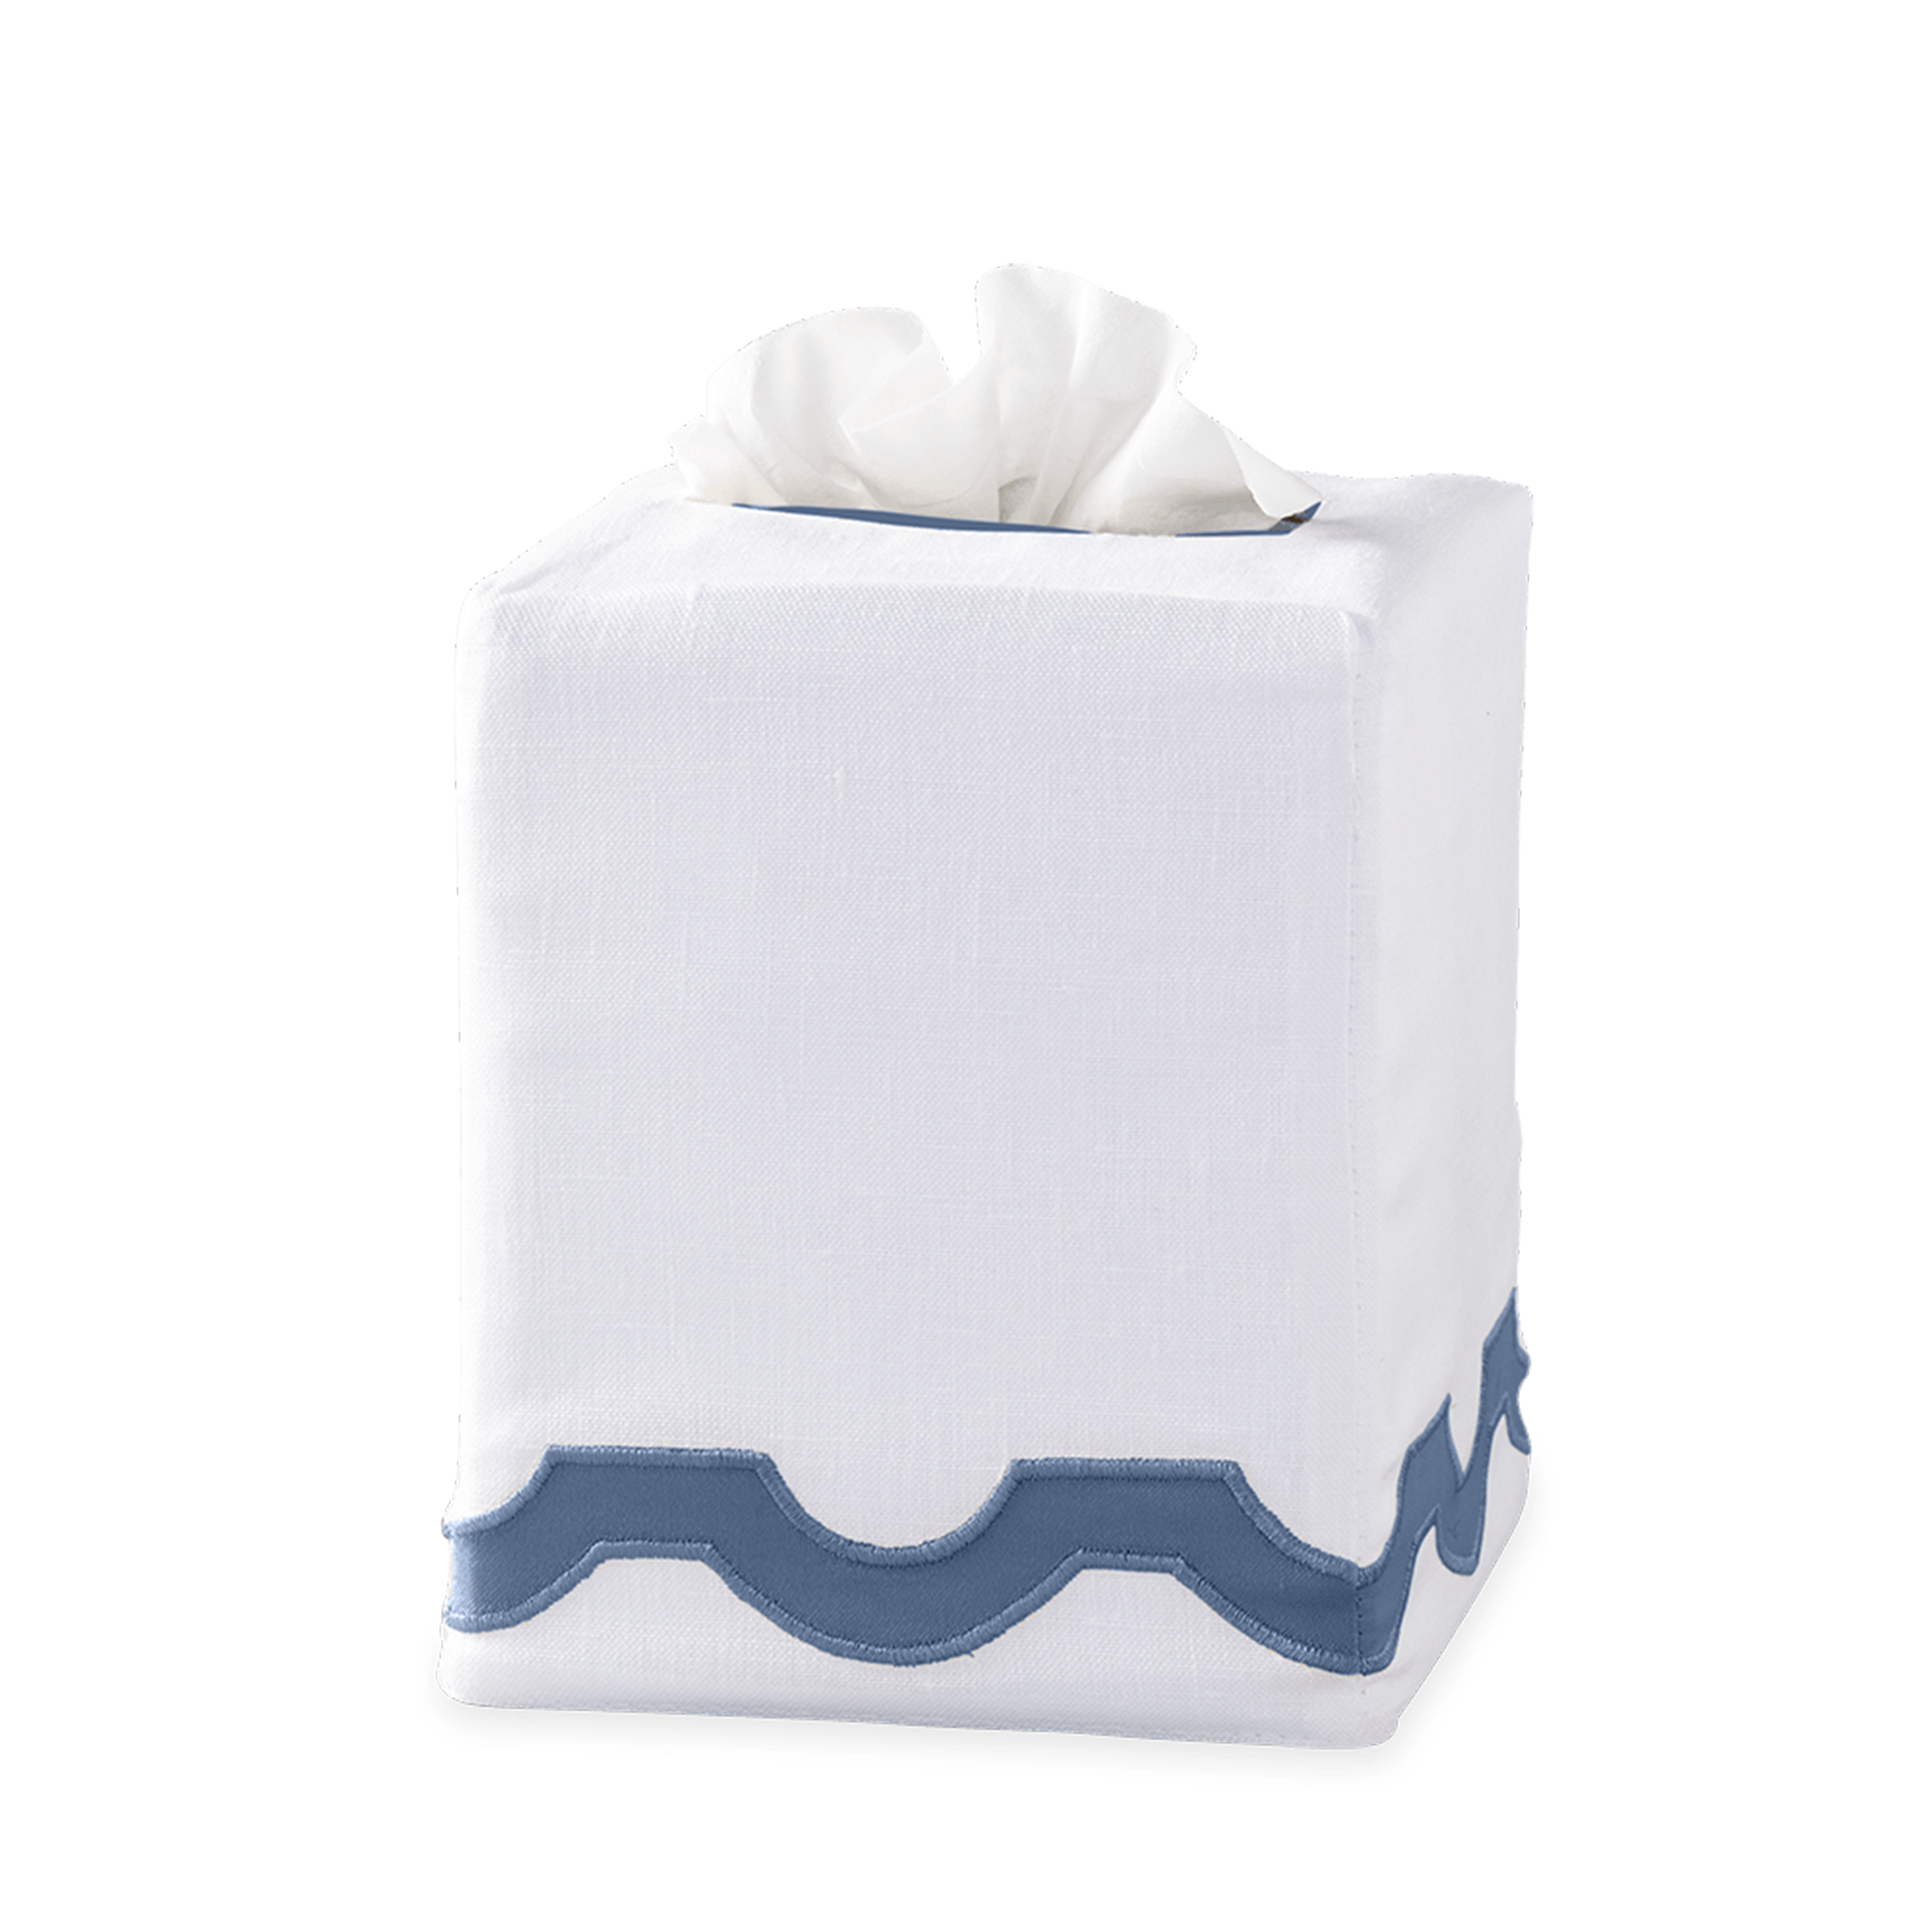 Silo Image of Matouk Mirasol Tissue Box Cover in Steel Blue Color